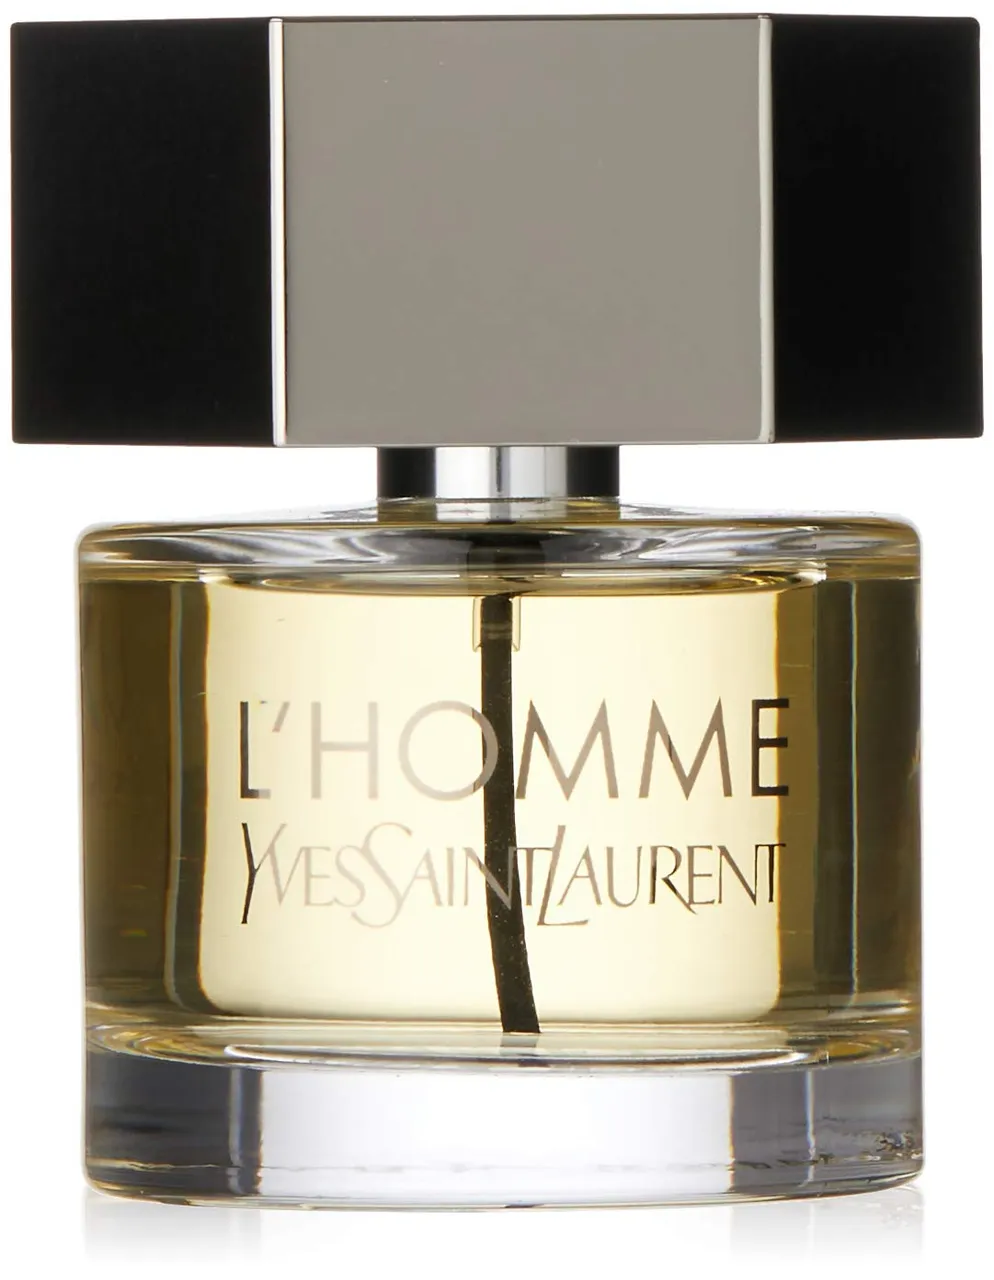 Yves Saint Laurent L'Homme Eau de Toilette Spray 60ml